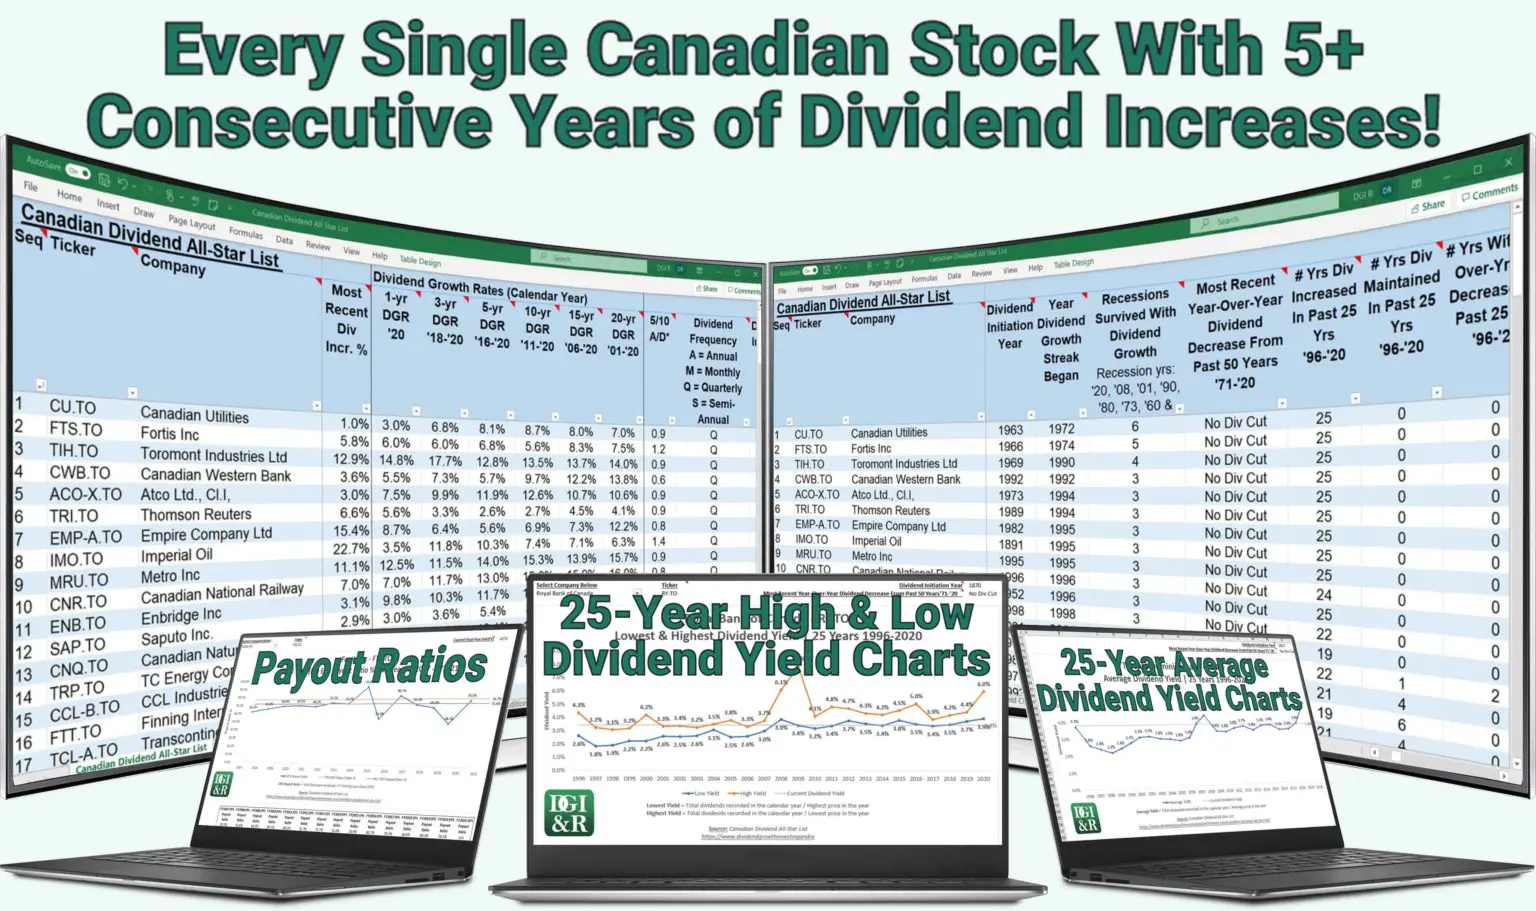 Canadian Dividend AllStar List DGI&R